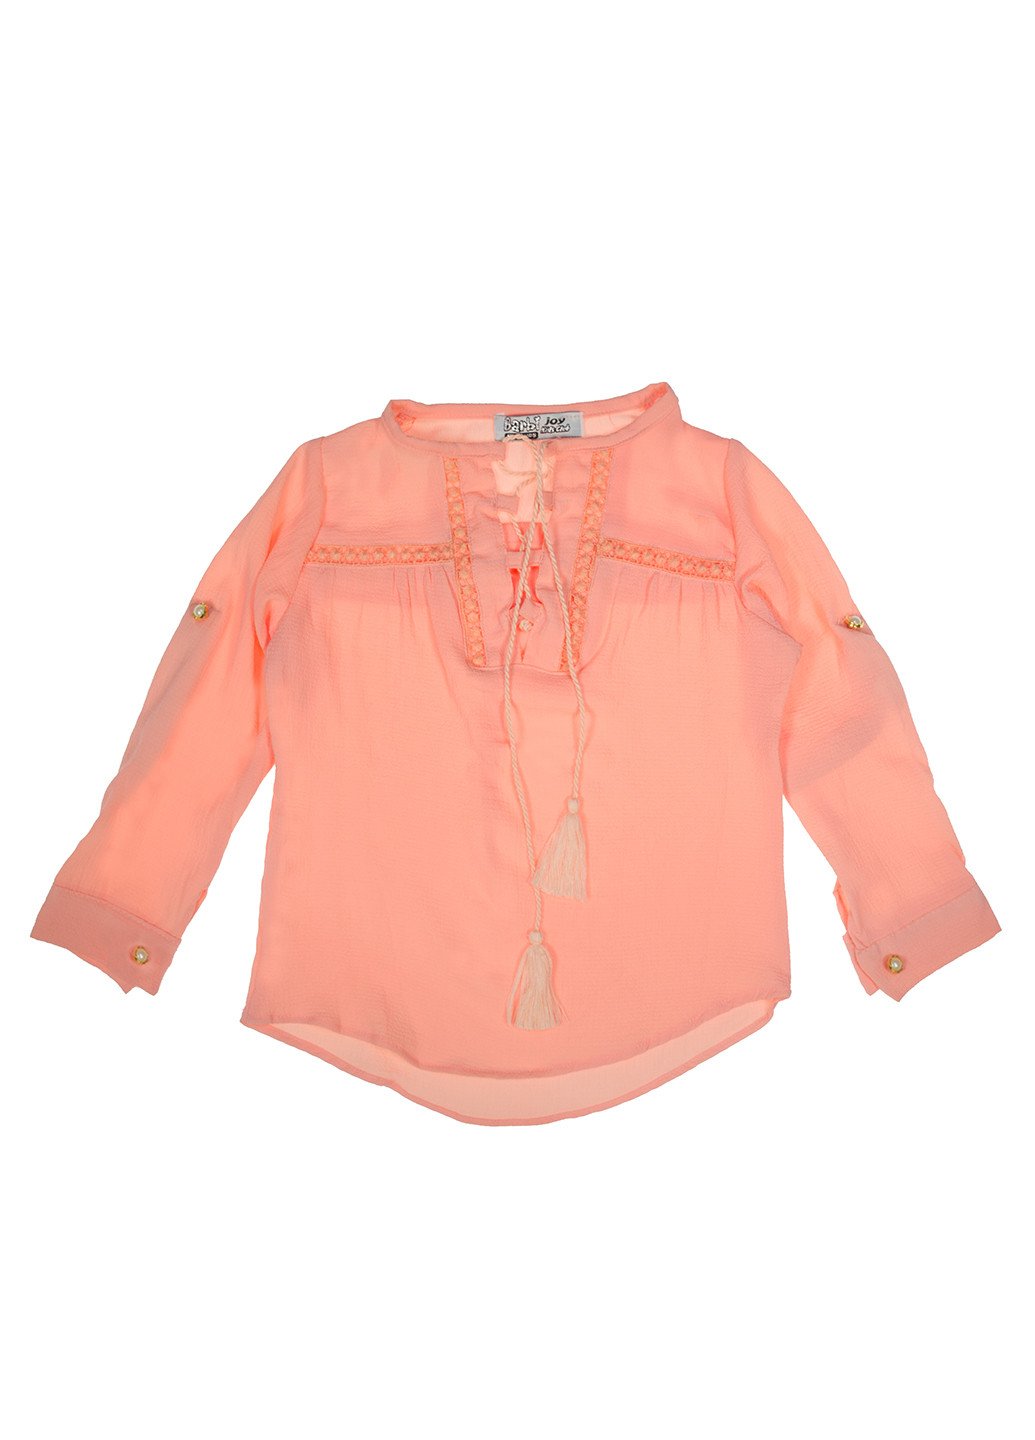 Персиковая однотонная блузка с длинным рукавом Barbie joy летняя